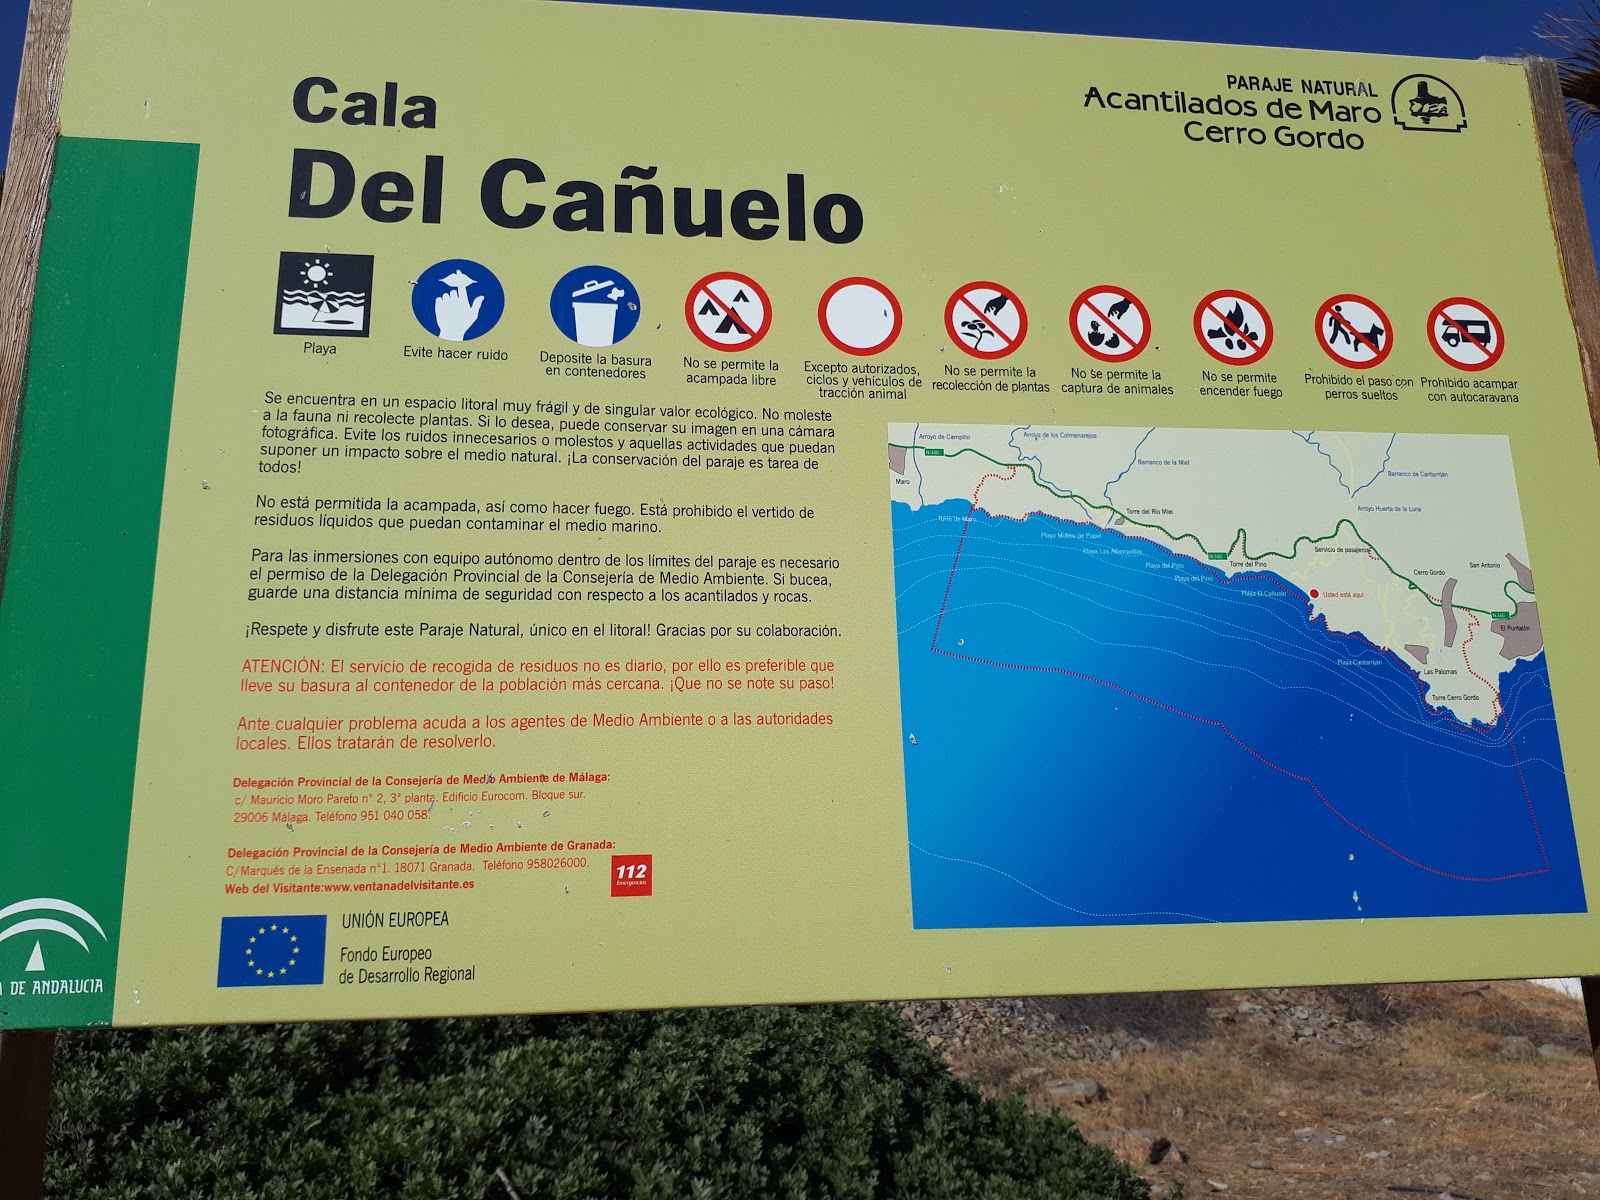 La Caleta beach'in fotoğrafı çok temiz temizlik seviyesi ile